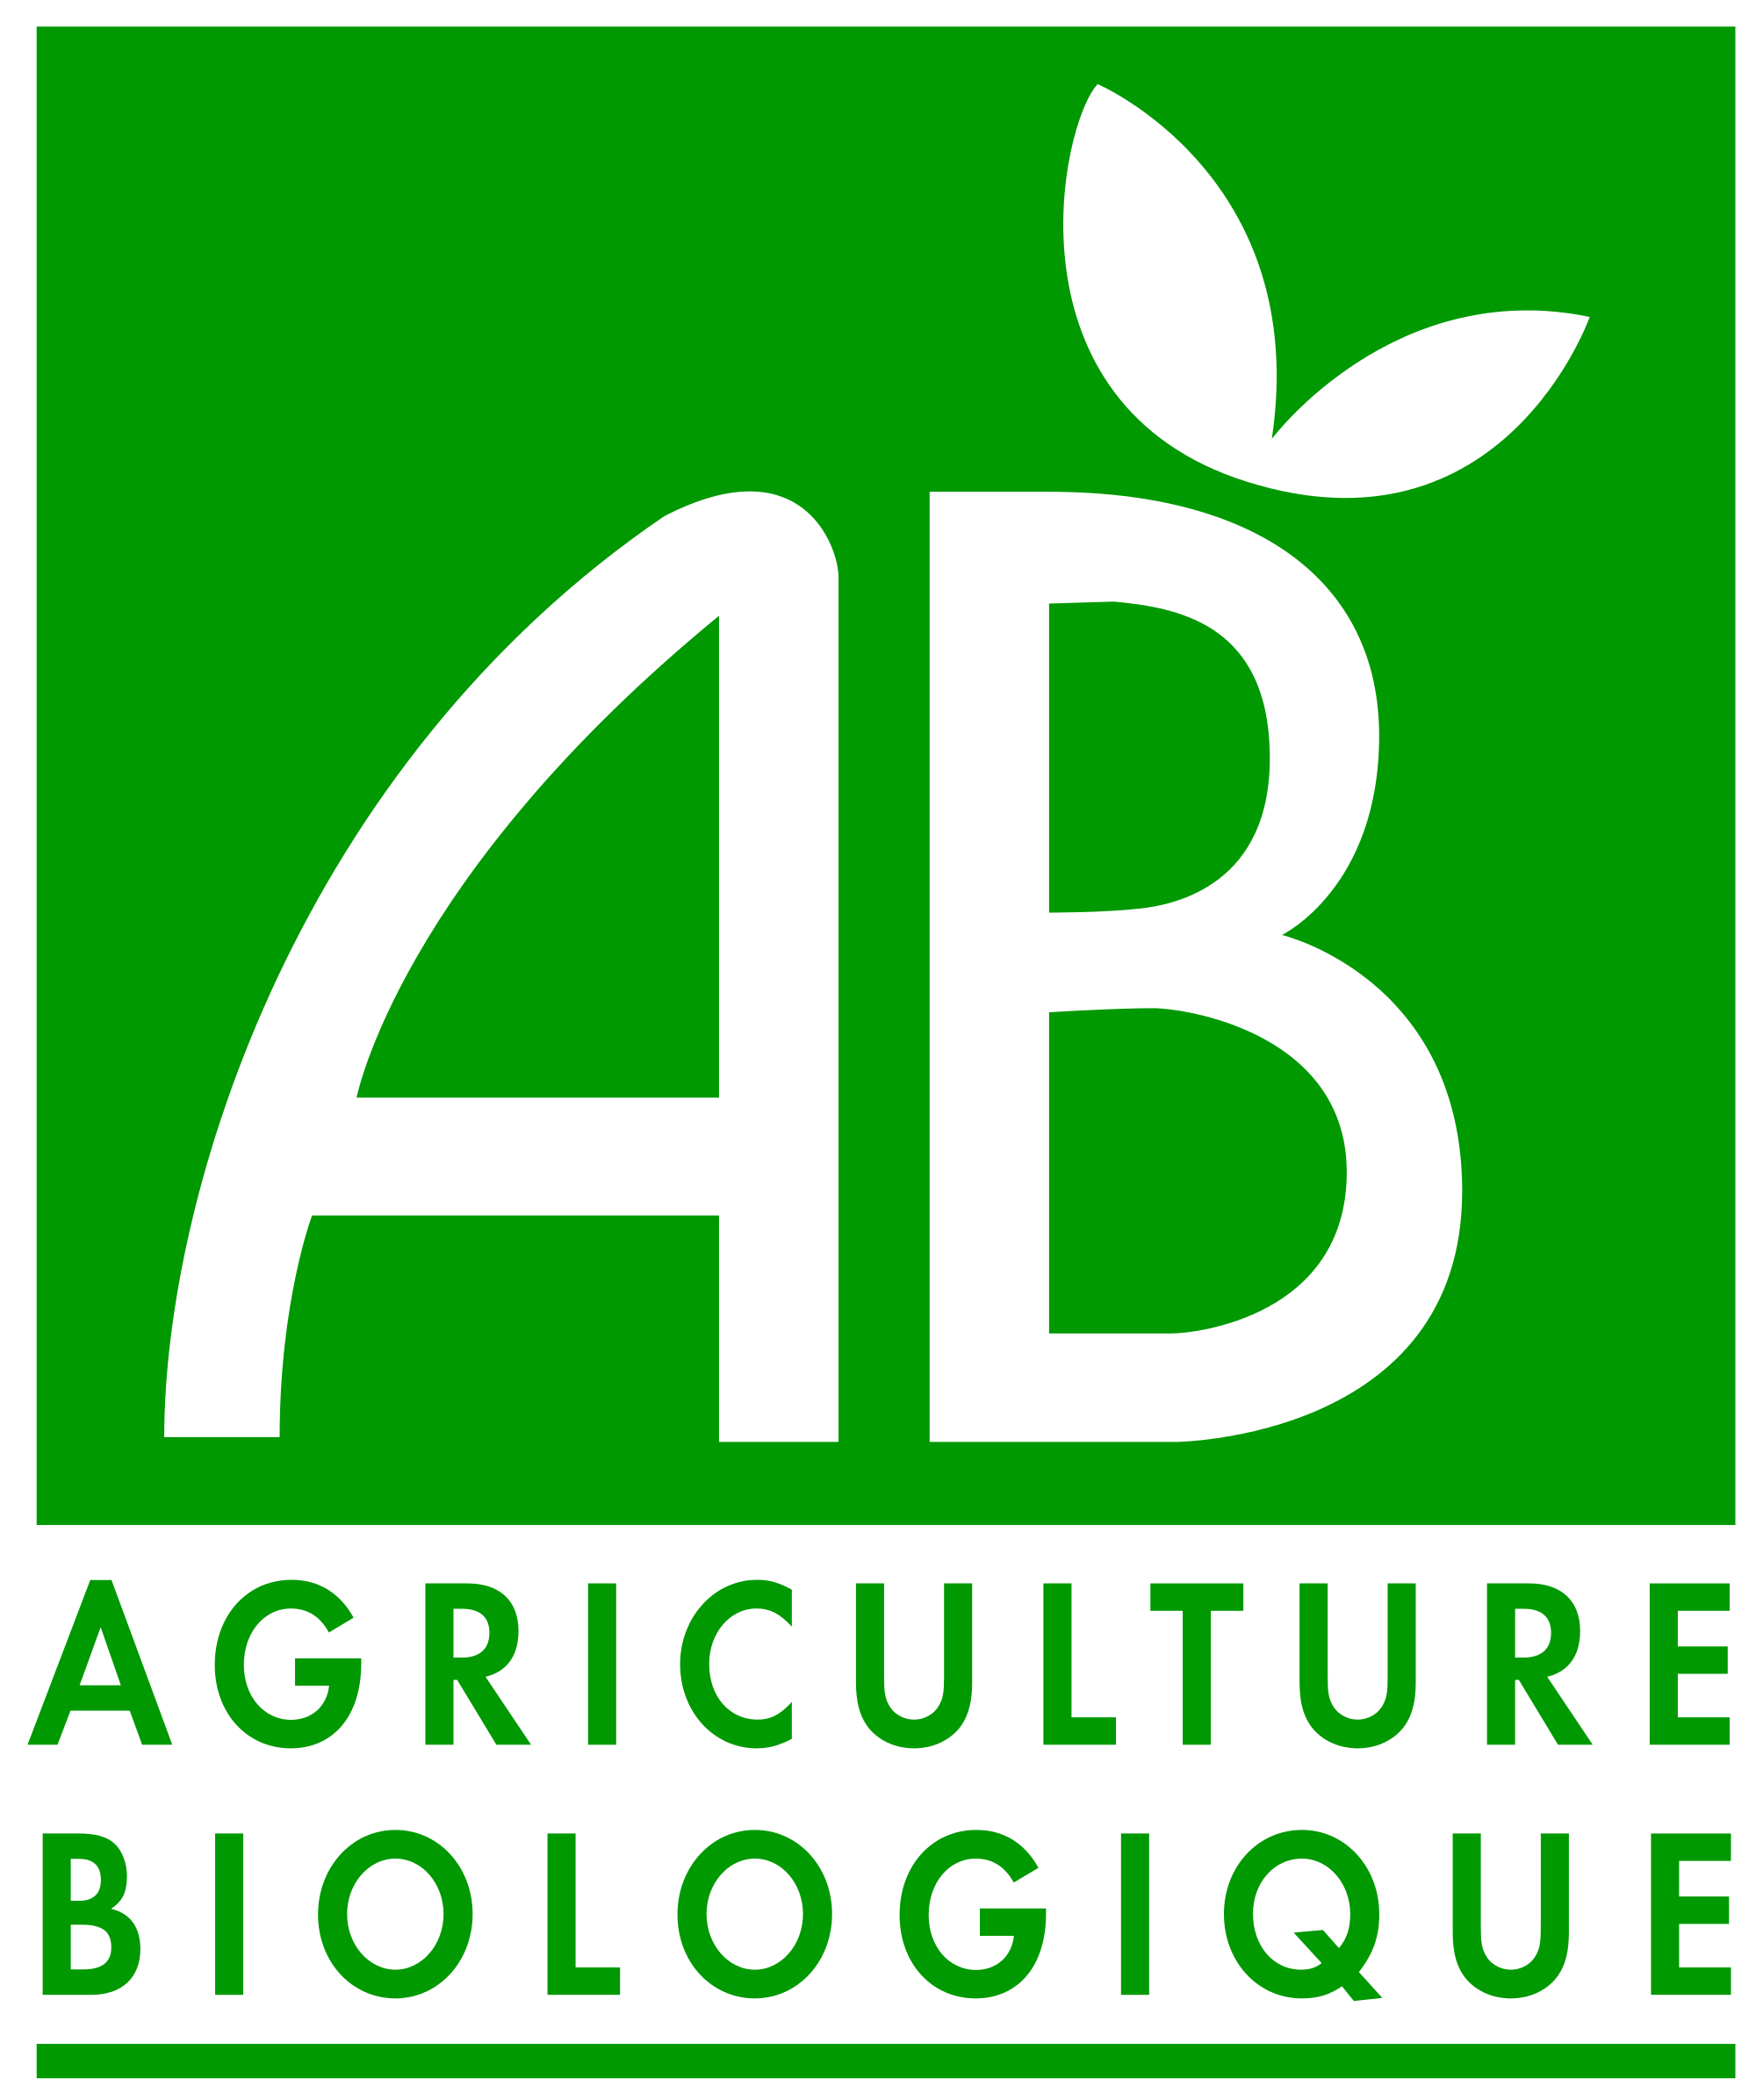 Agriculture-biologique simulation de flux